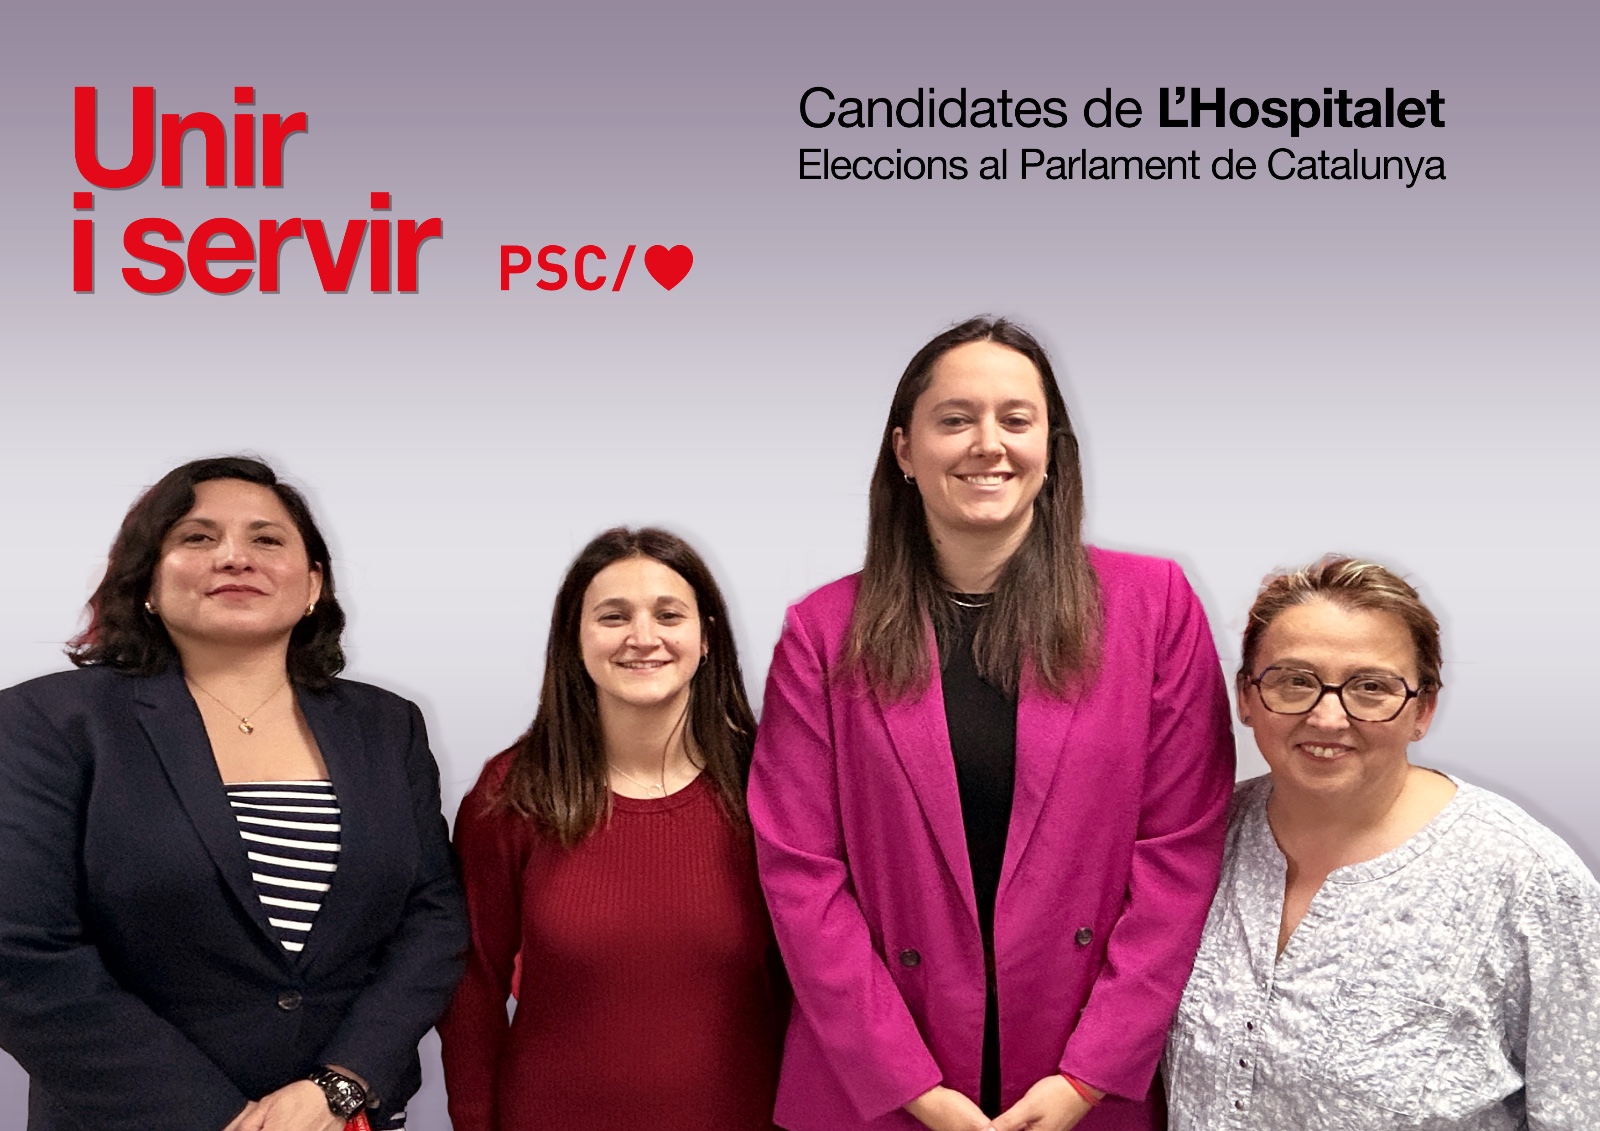 Les nostres candidates al Parlament de Catalunya